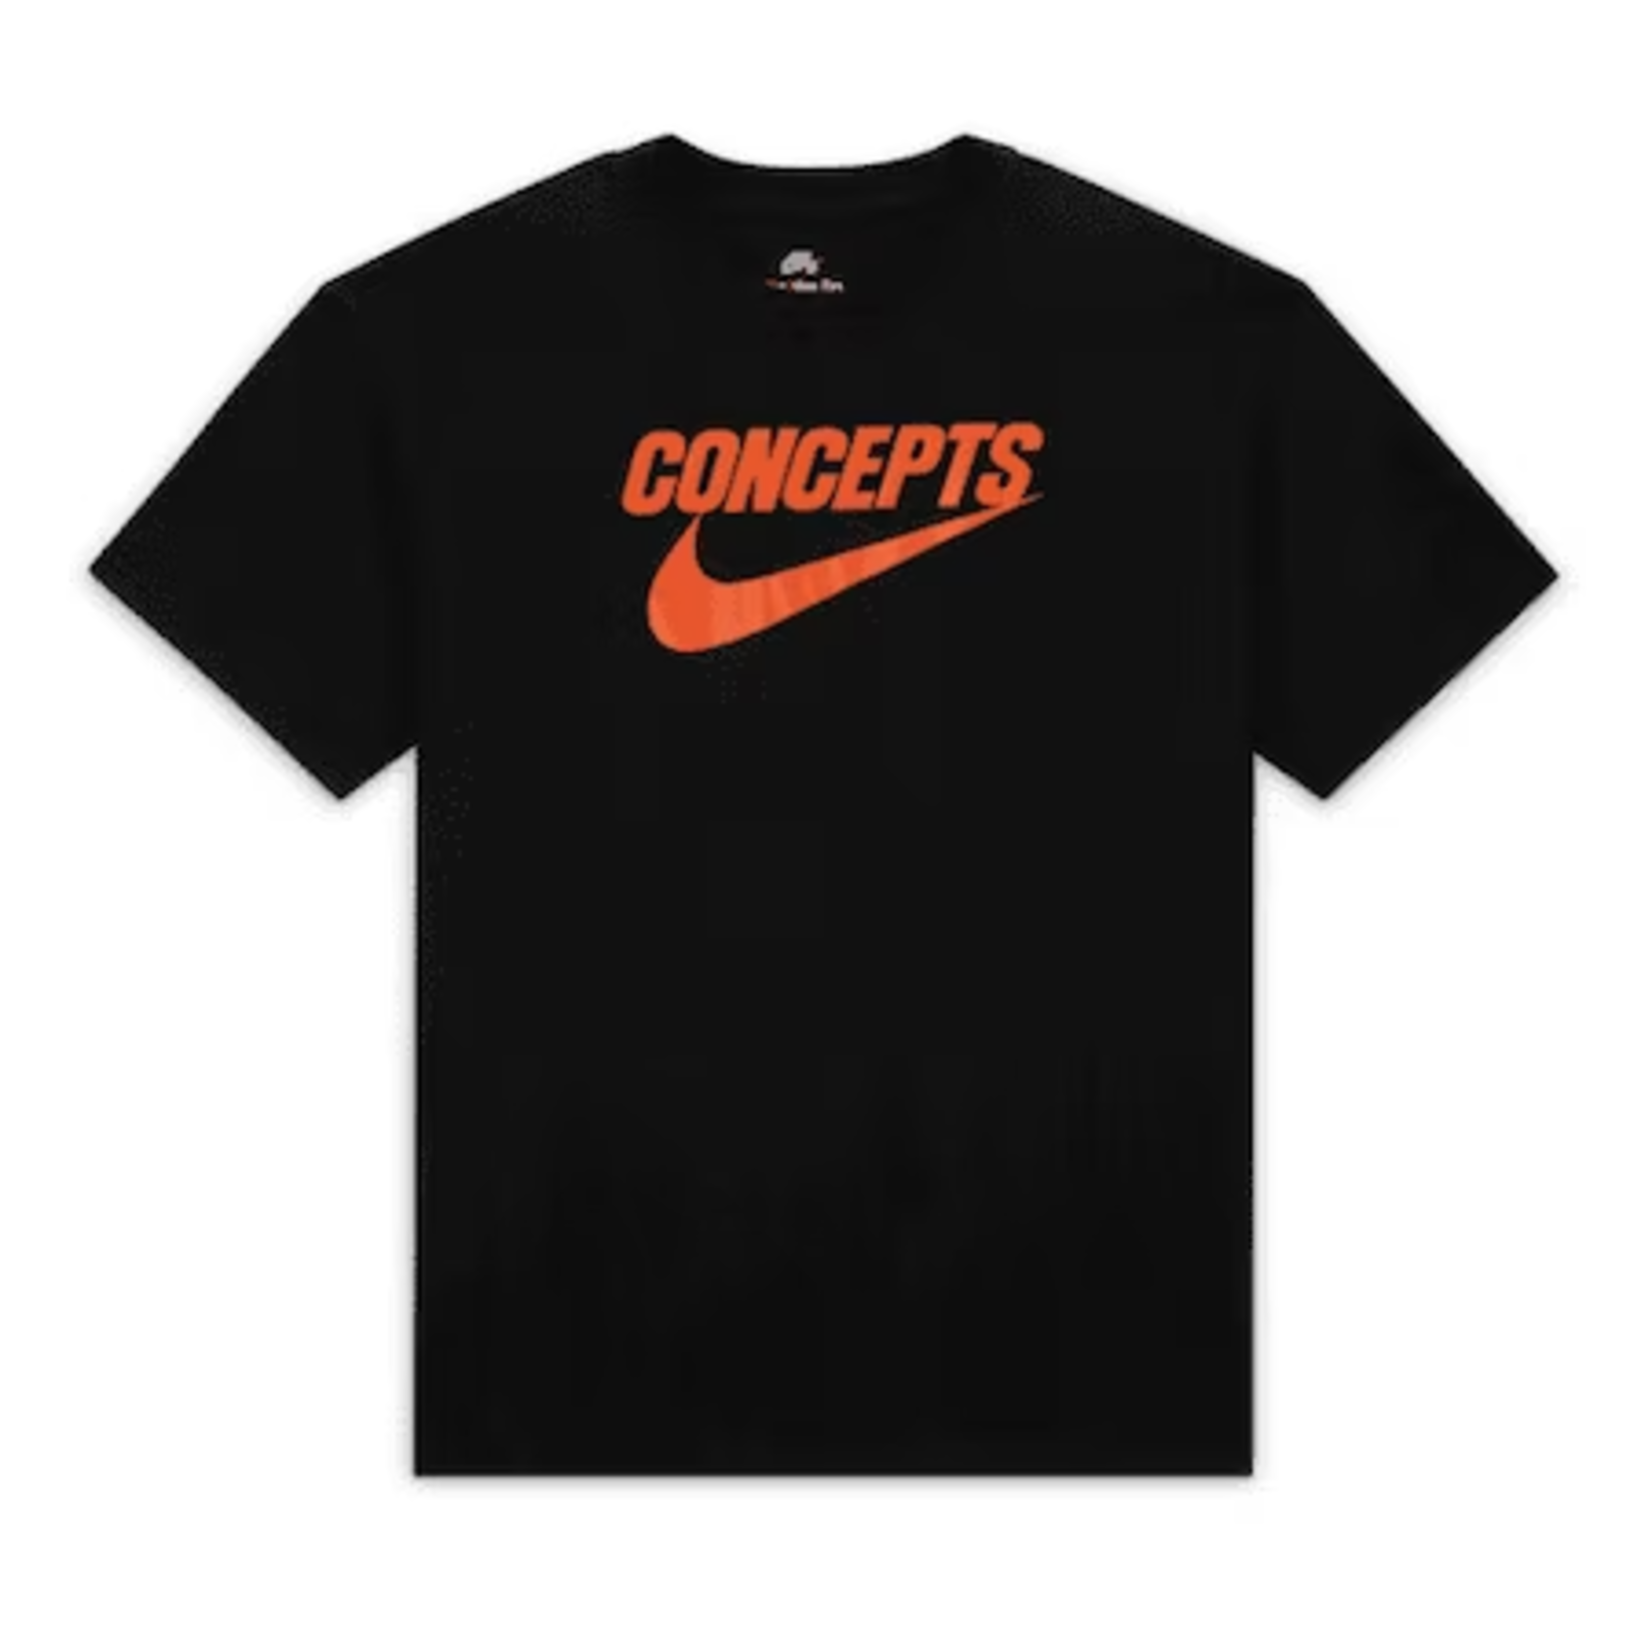 Nike Nike SB x Concepts Men's Skate T-Shirt Black Size Medium, DS BRAND NEW